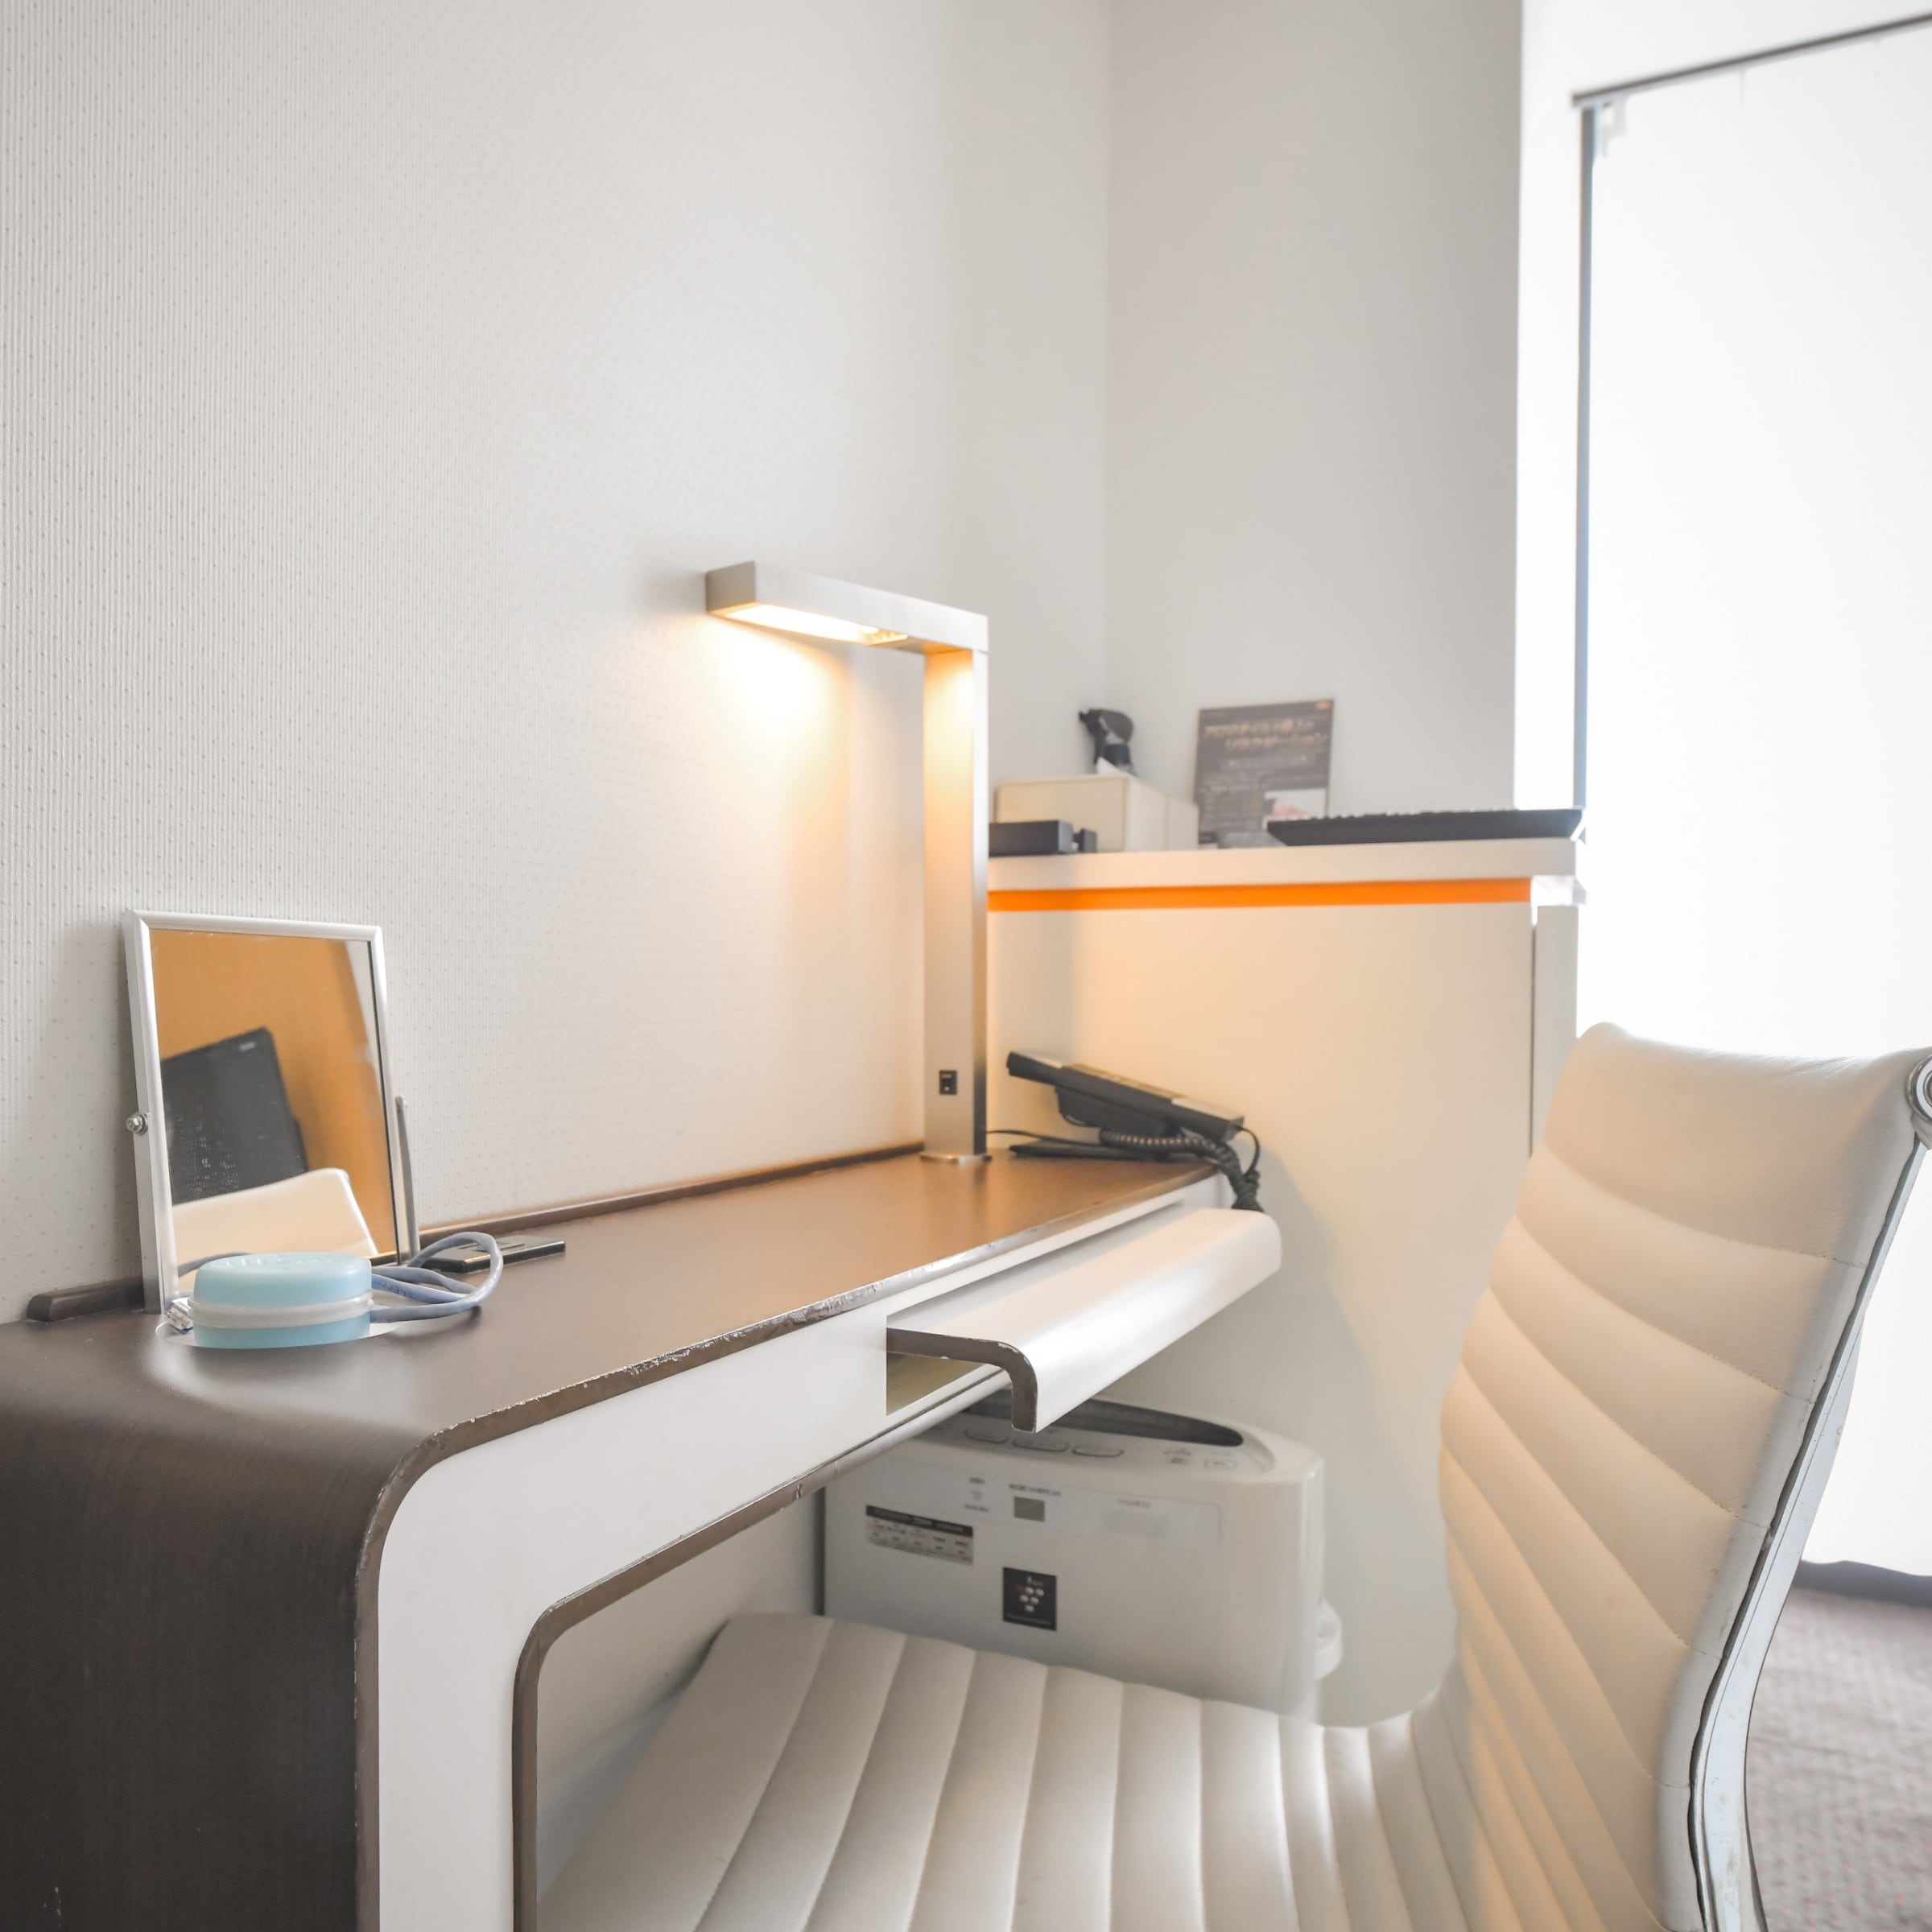 Lantai standar: Meja dengan lampu berdiri